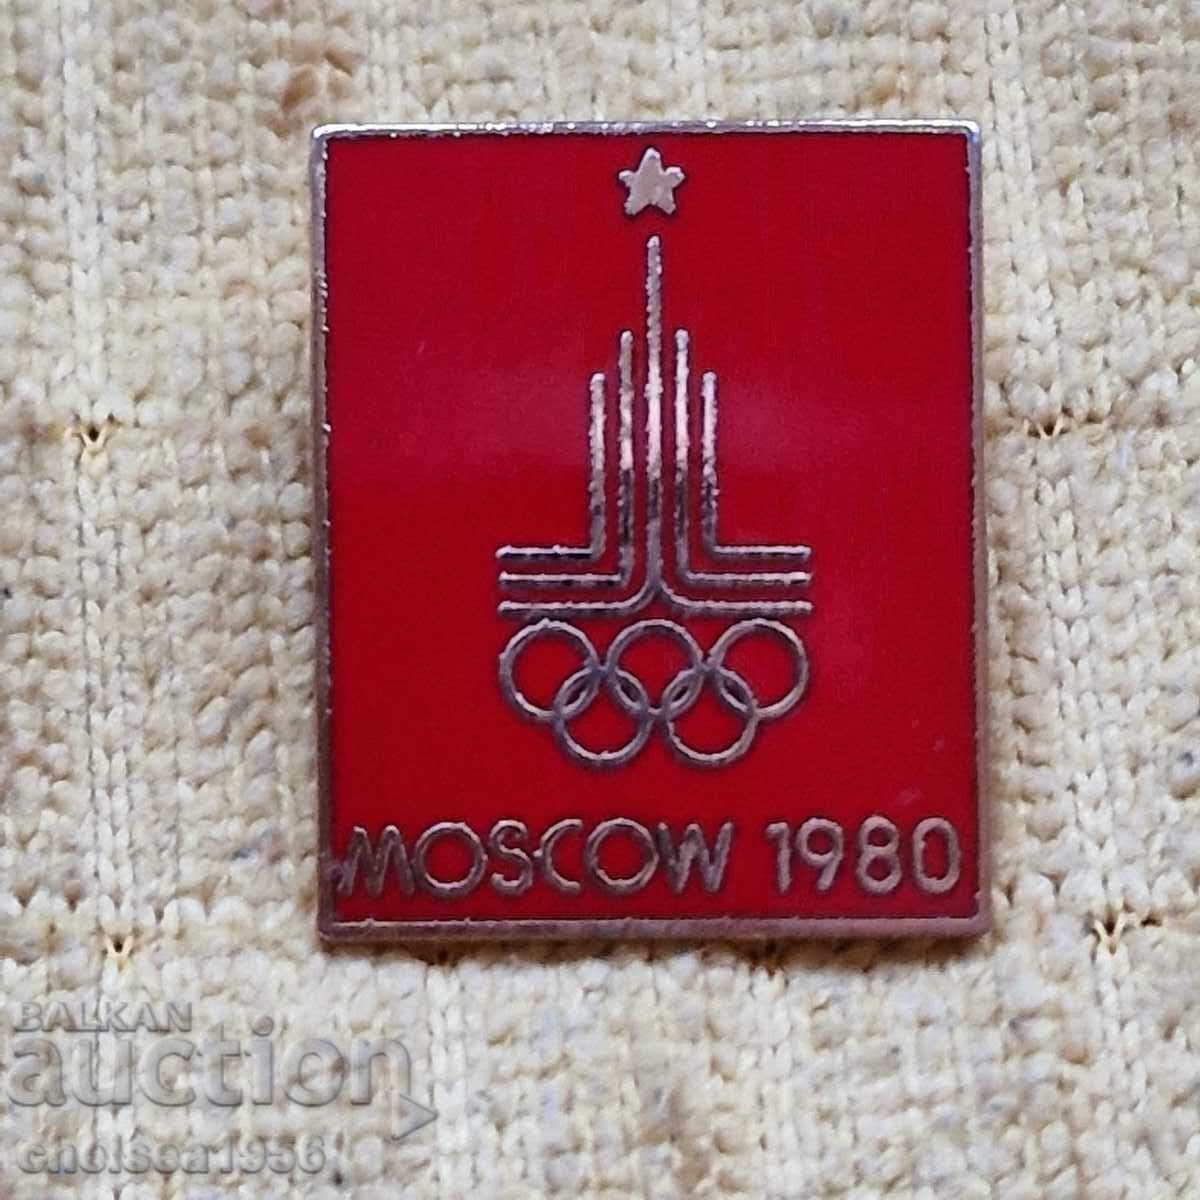 Ολυμπιακοί τίτλοι της Μόσχας 1980